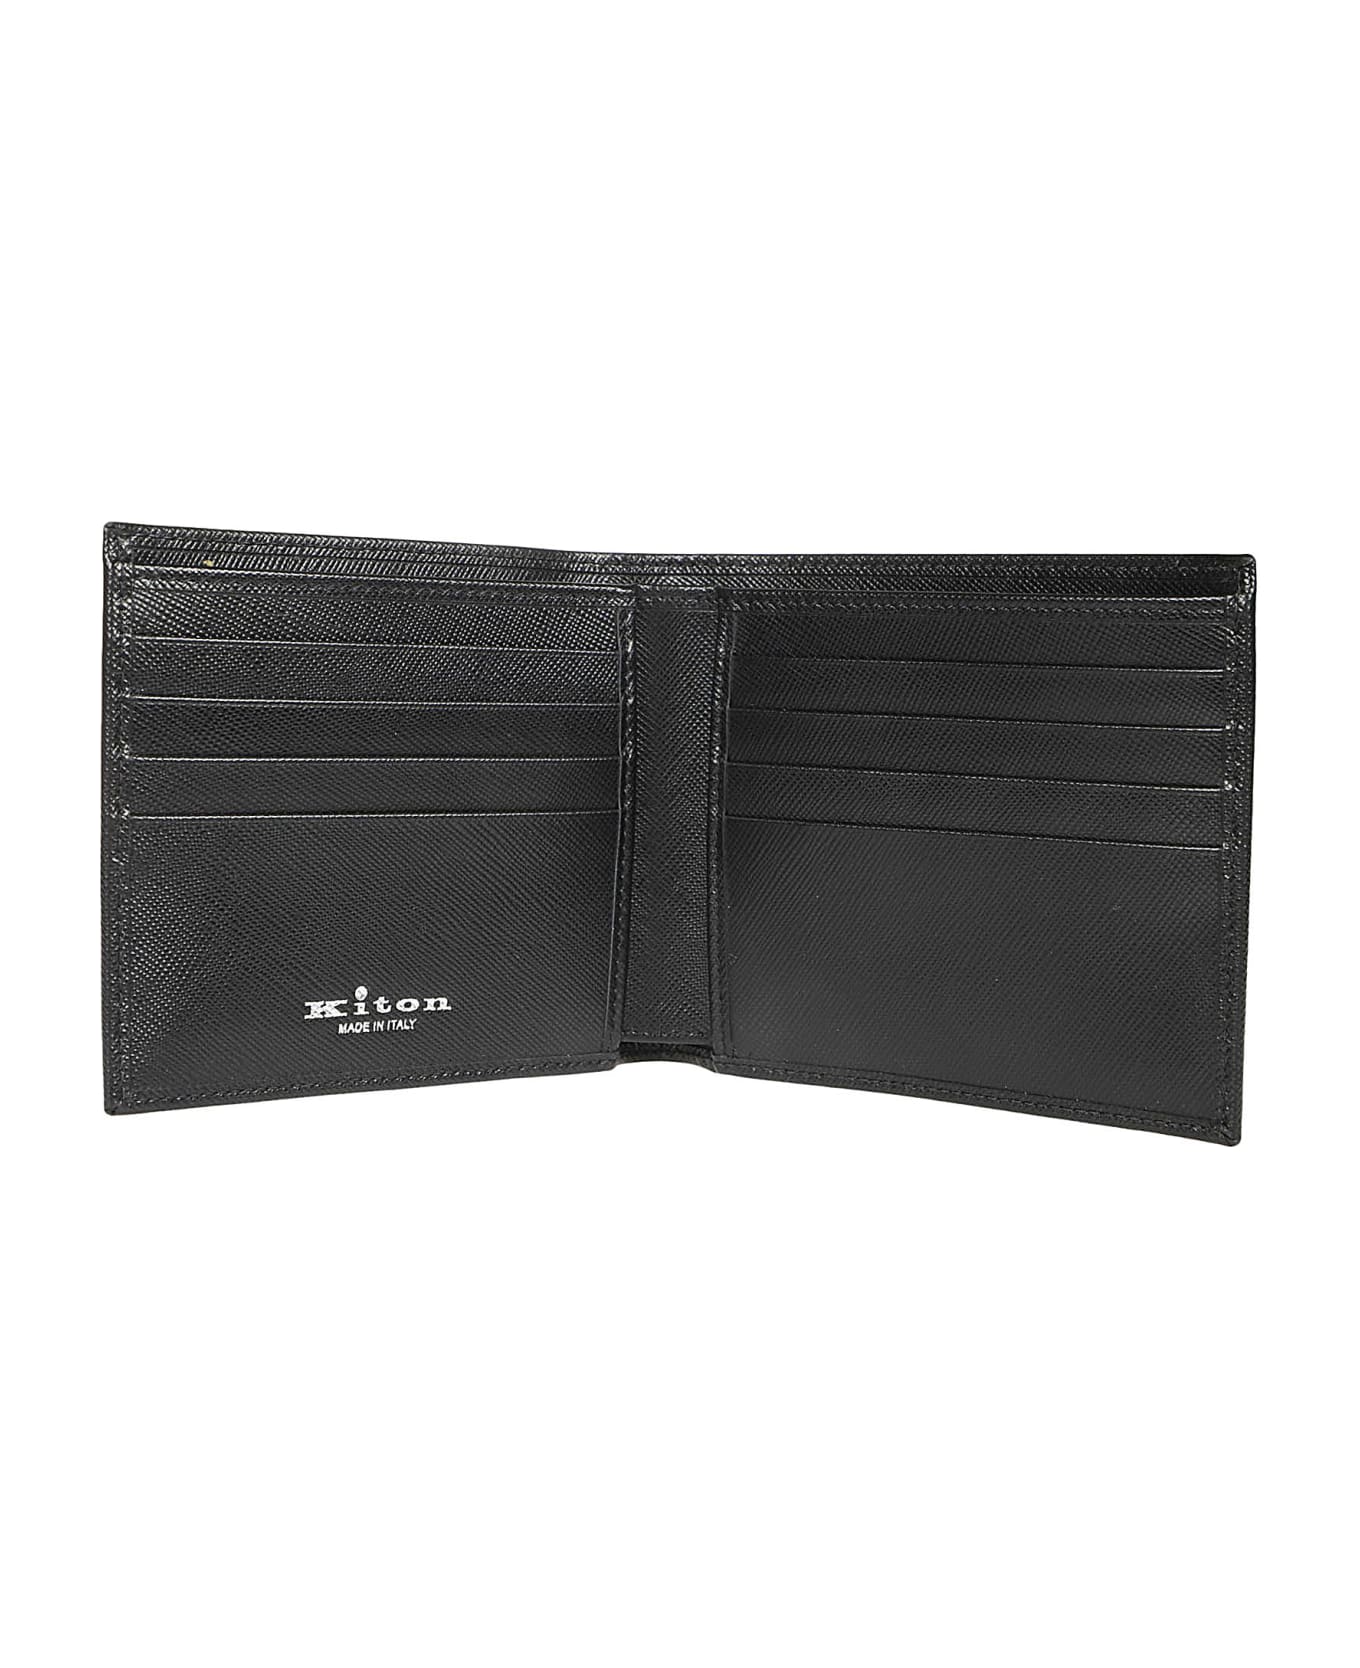 Kiton A015 Wallet - Nero 財布